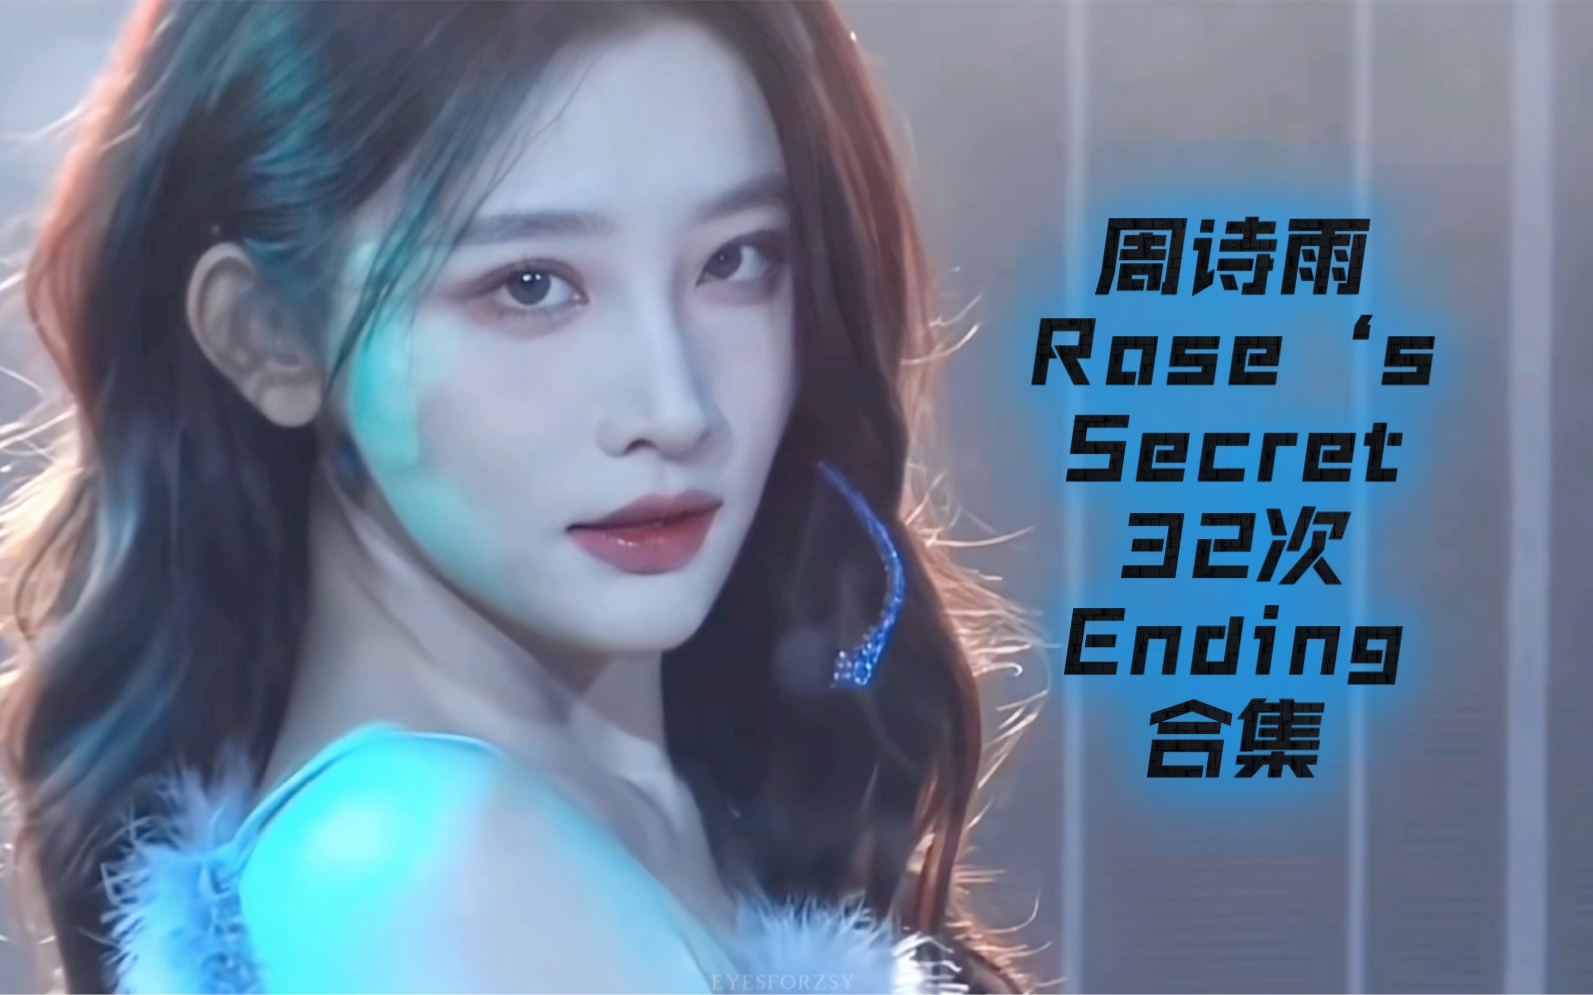 【周诗雨】Rose‘s Secret Ending之神的养成